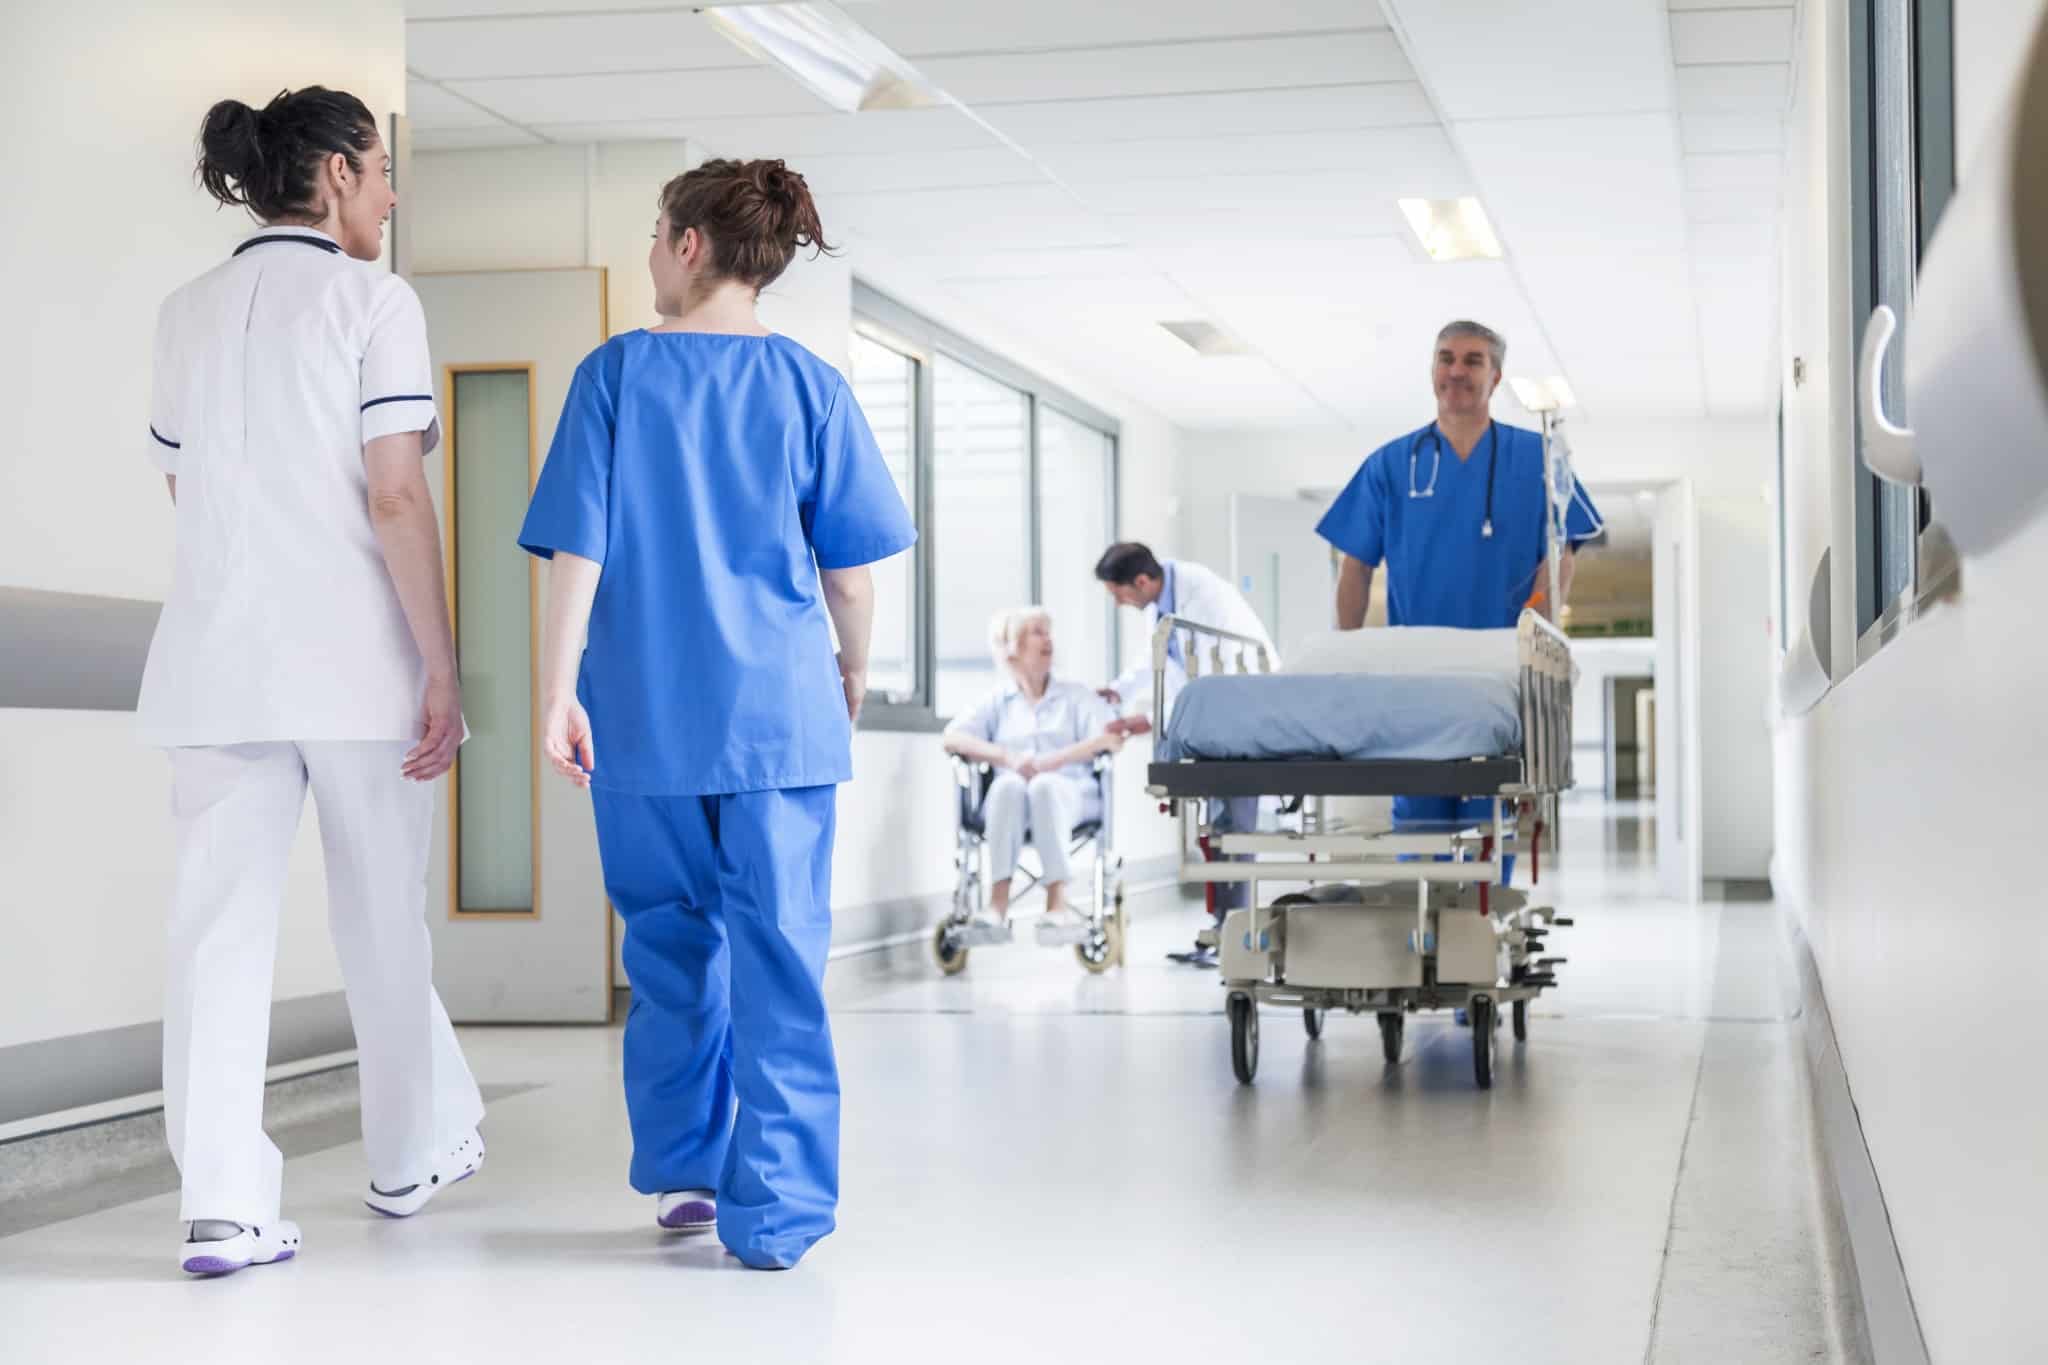 Nurse pushing a stretcher in a hospital